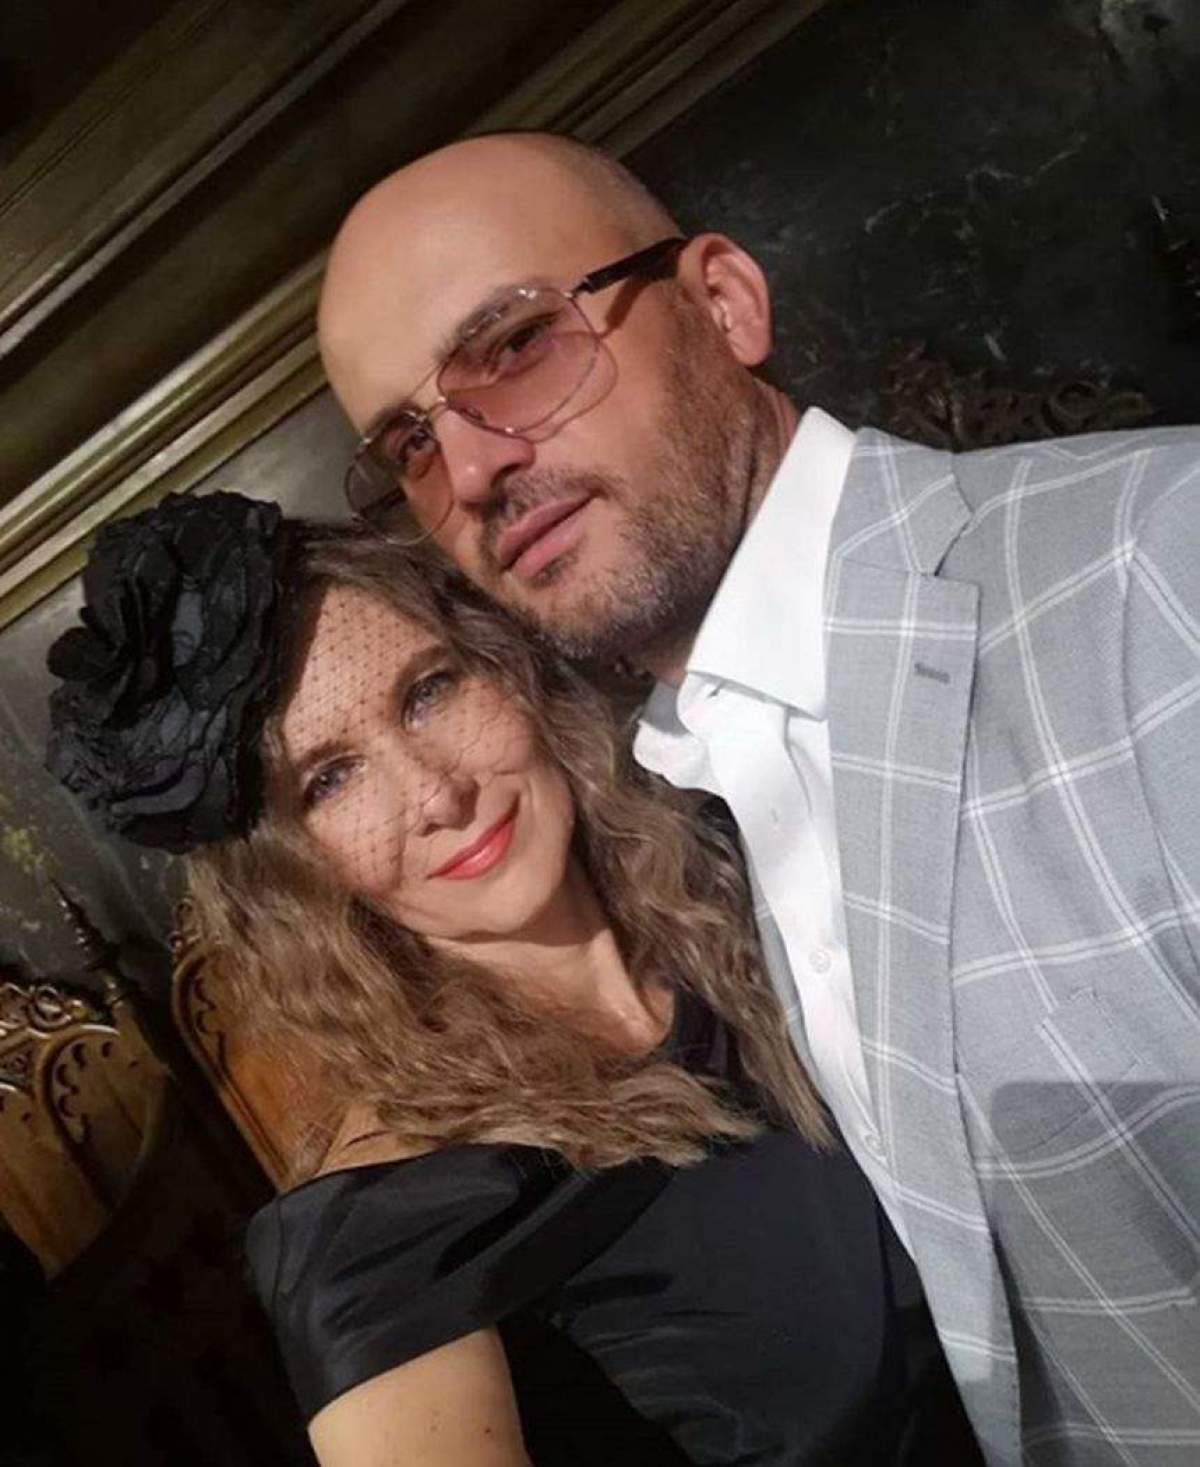 Romanița Iovan și iubitul ei, Iulian Gogan, s-au logodit în secret. Primele declarații despre evenimentul care a avut loc